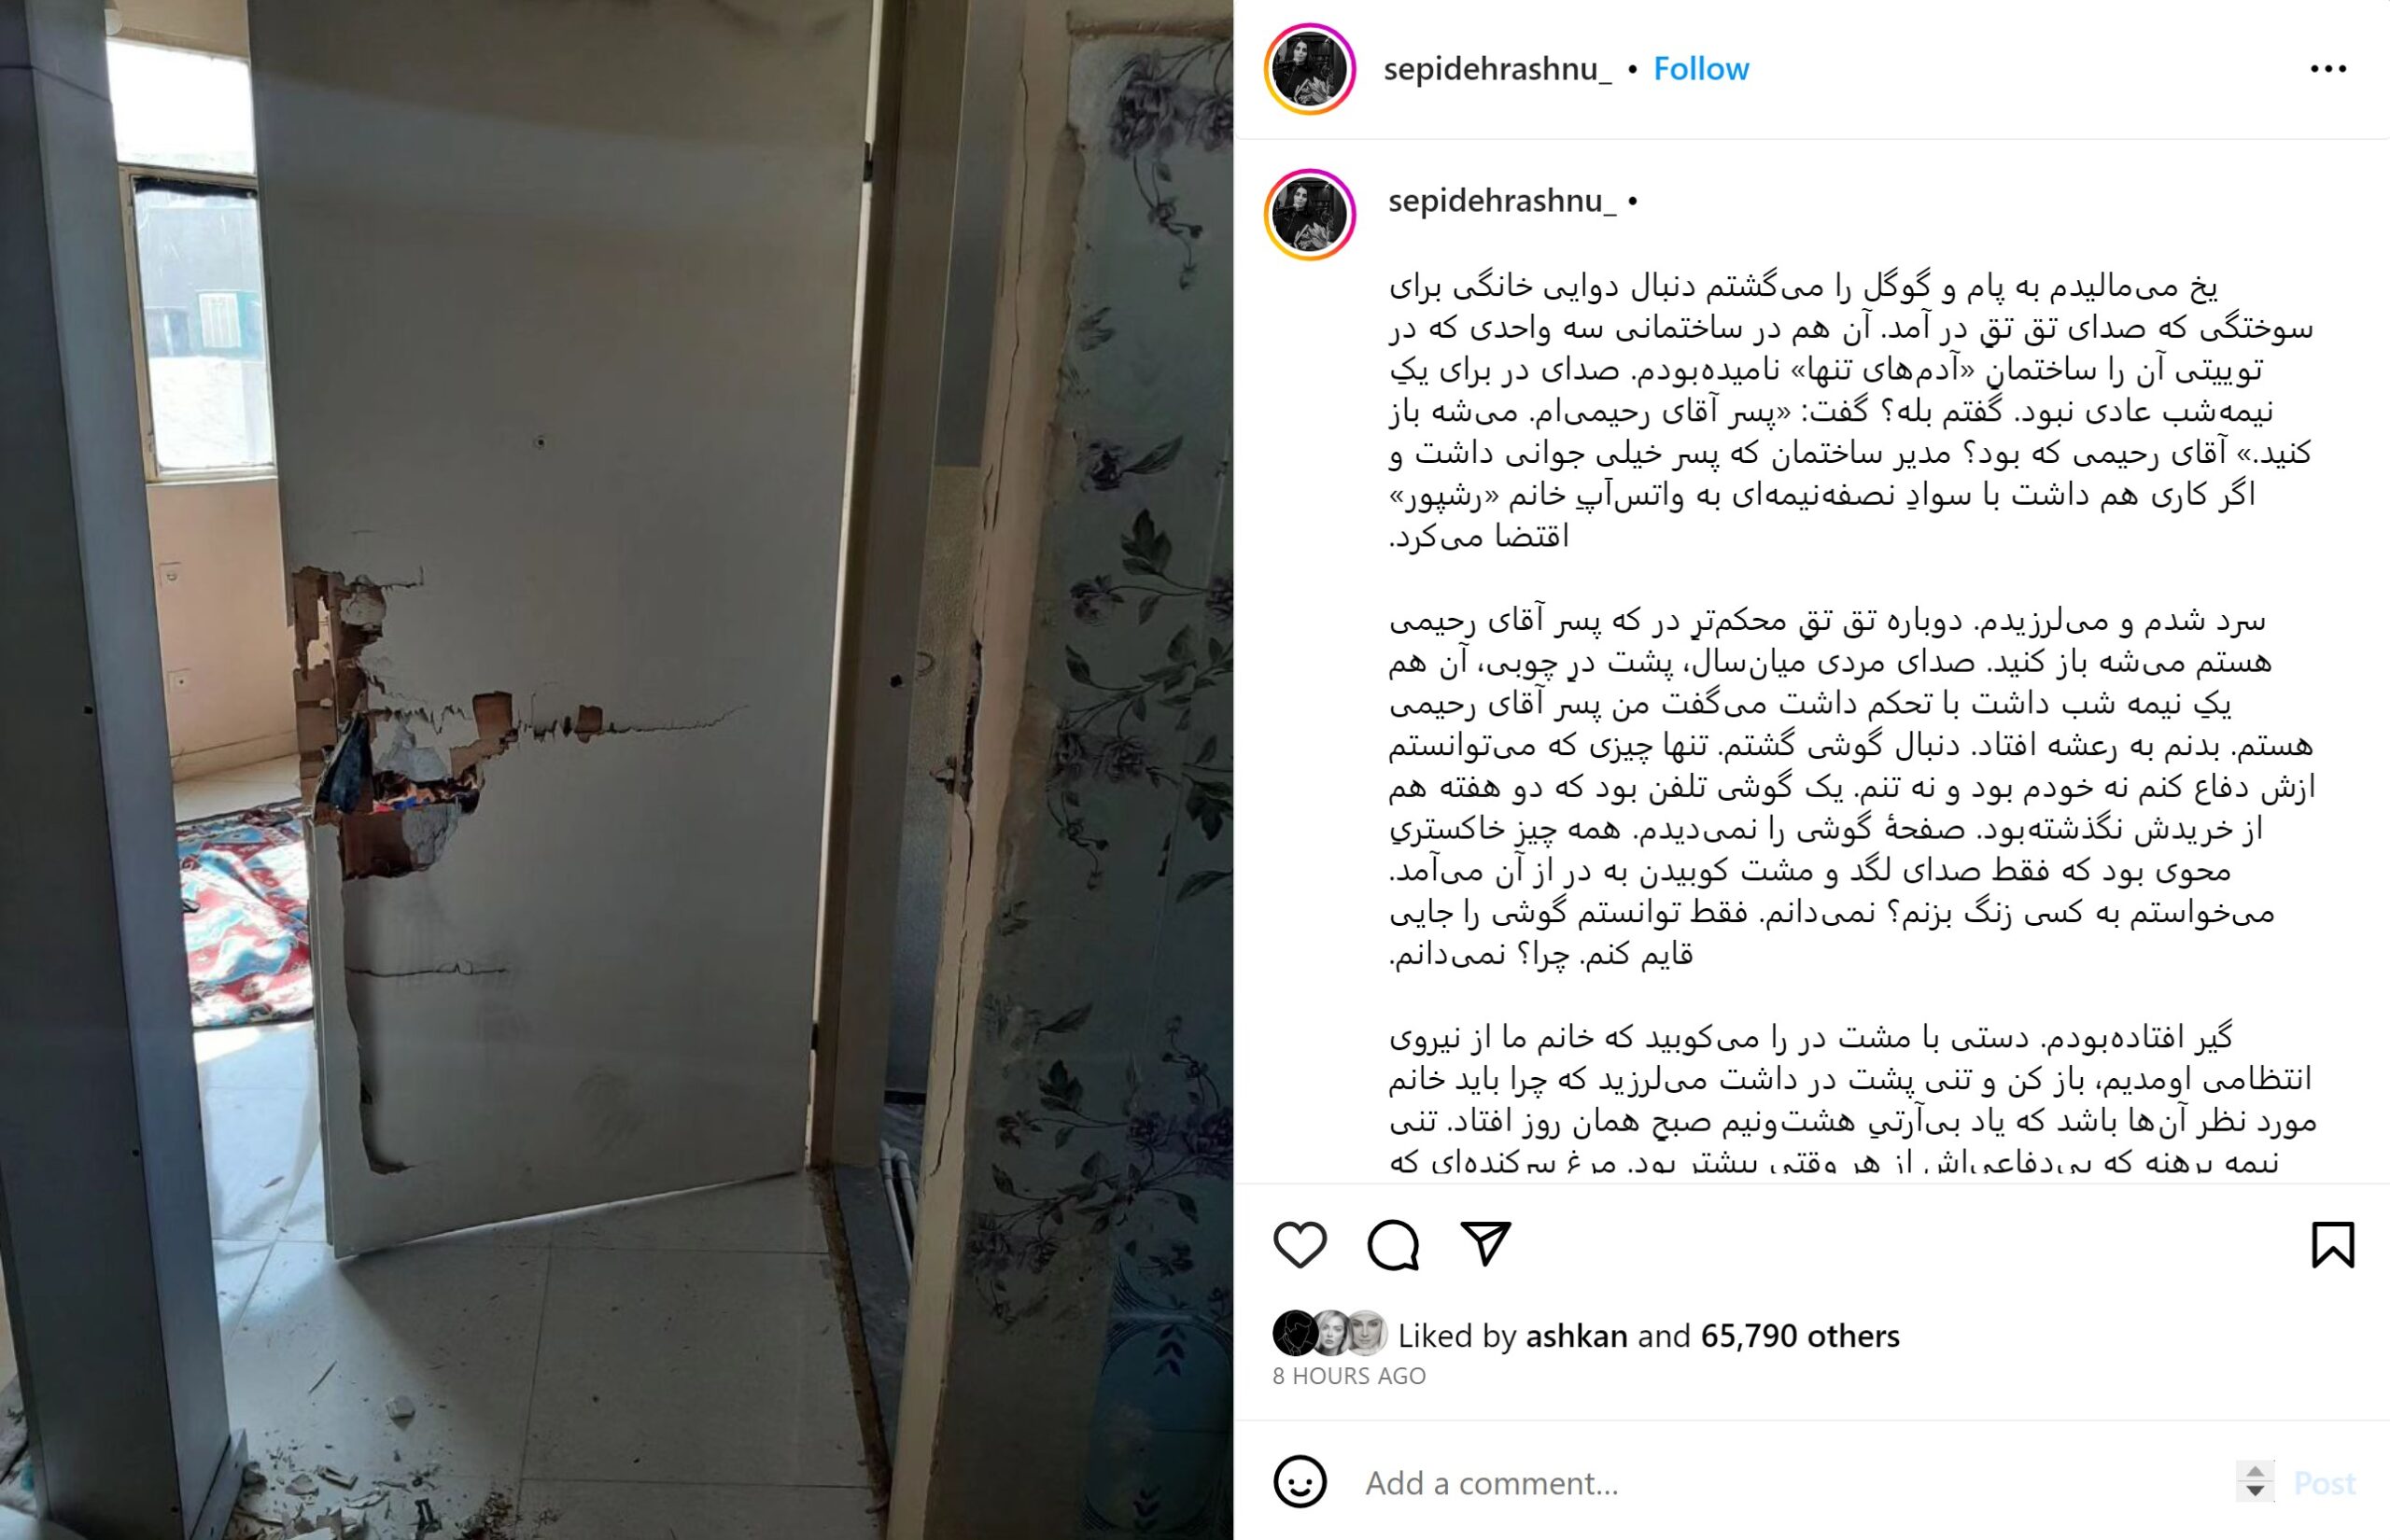 سپیده رشنو ضمن انتشار عکس یک در شکسته، جزییاتی از هجوم شبانه مأموران به خانه، بازداشت و بازجویی شدن خود را شرح داد